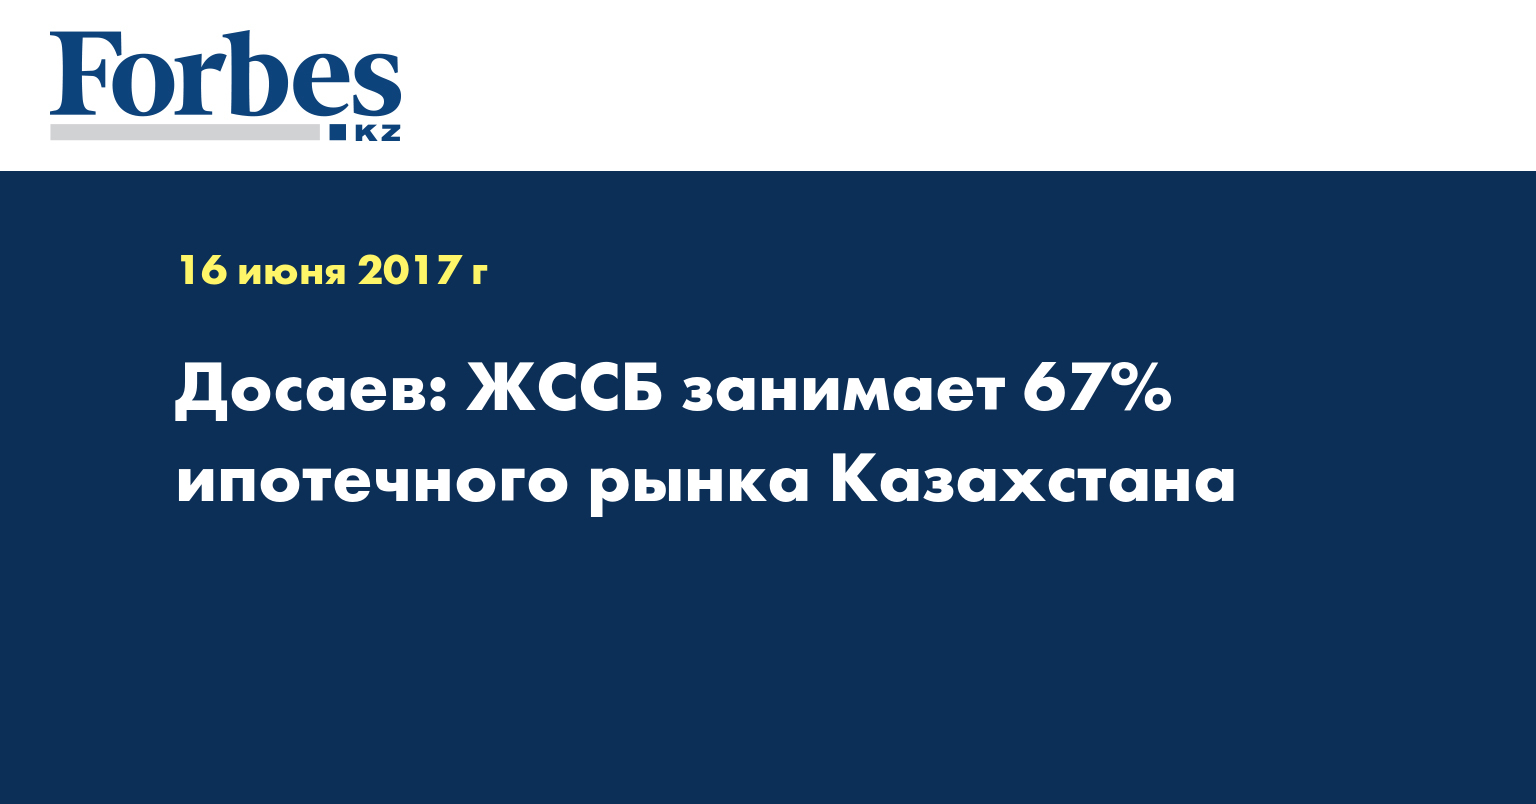 Досаев: ЖССБ занимает 67% ипотечного рынка Казахстана